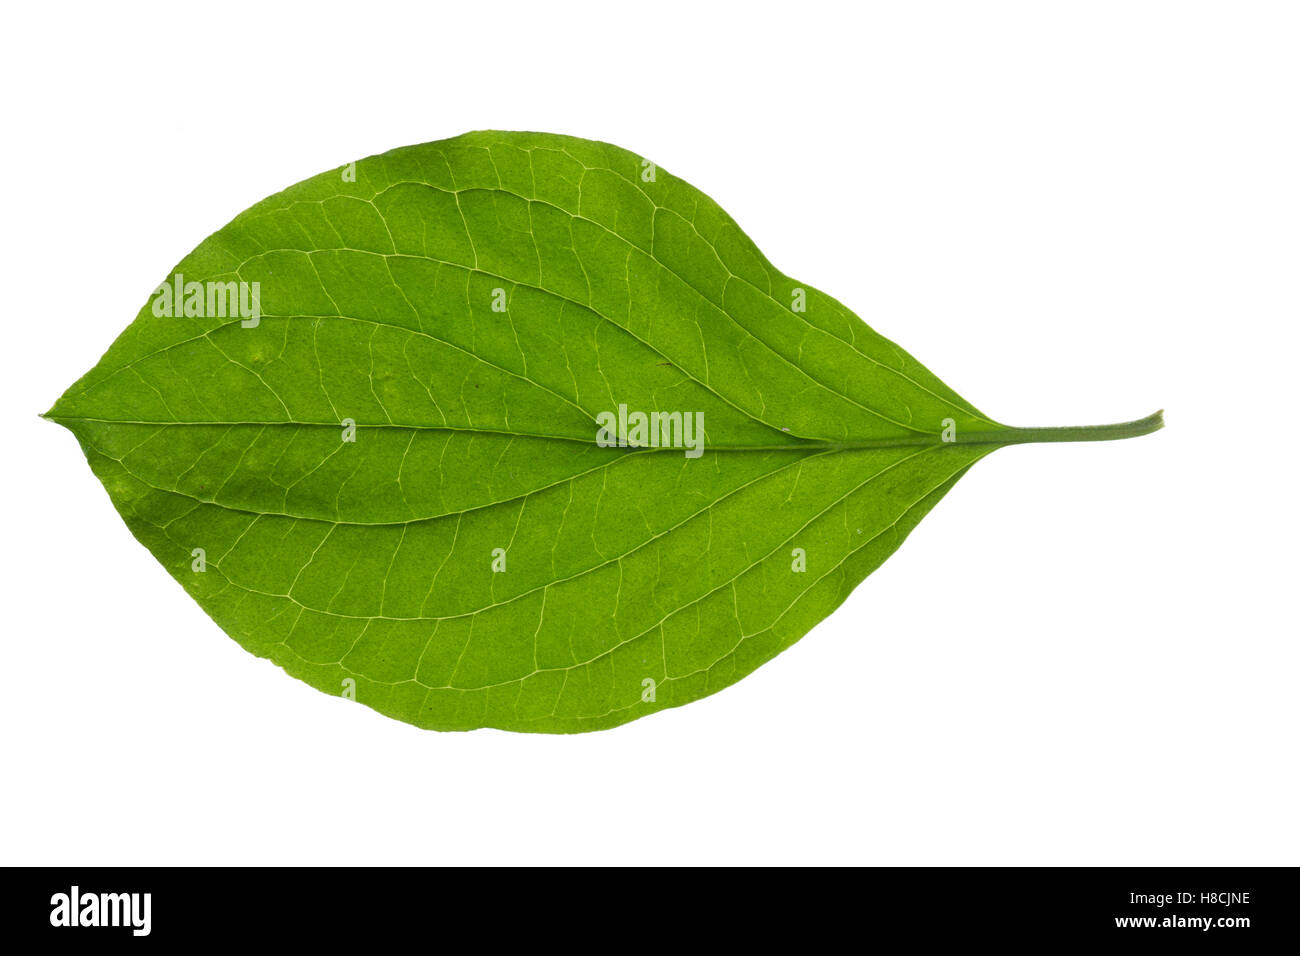 Blutroter Hartriegel, Cornus sanguinea, sanguinella, Dogberry, Cornouiller sanguin. Blatt, Blätter, leaf, foglie Foto Stock